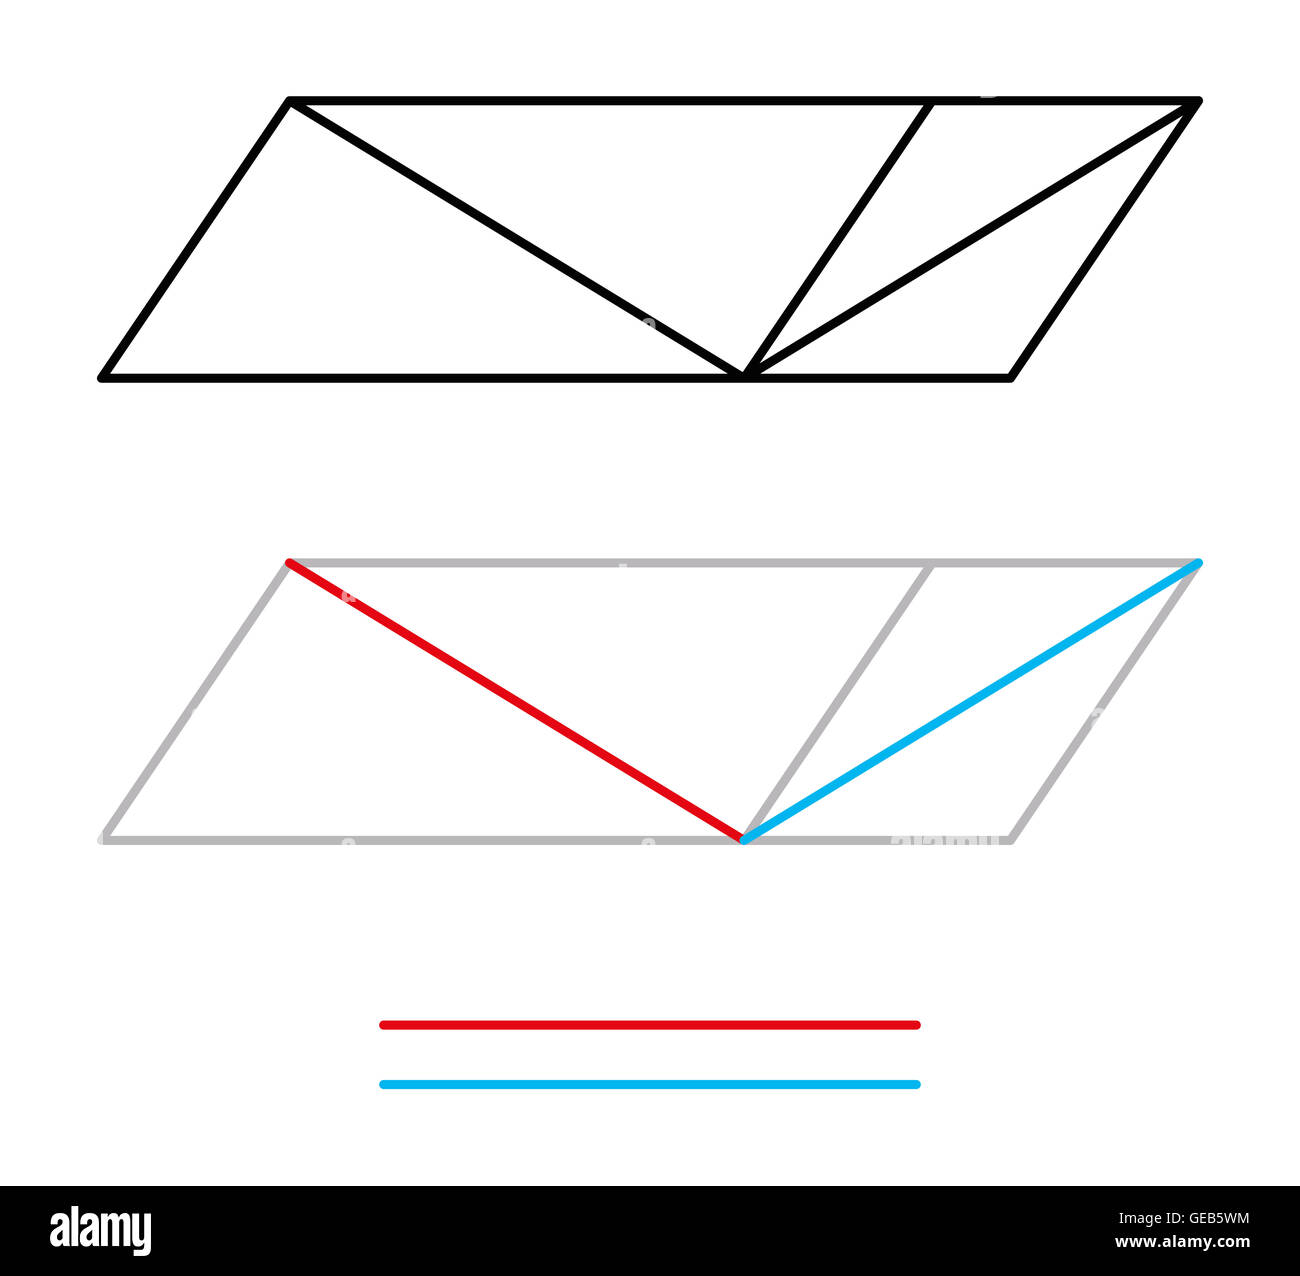 Sander optische Täuschung oder Sanders Parallelogramm. Die linke diagonale Linie scheint länger als die richtige Linie zu sein. Stockfoto